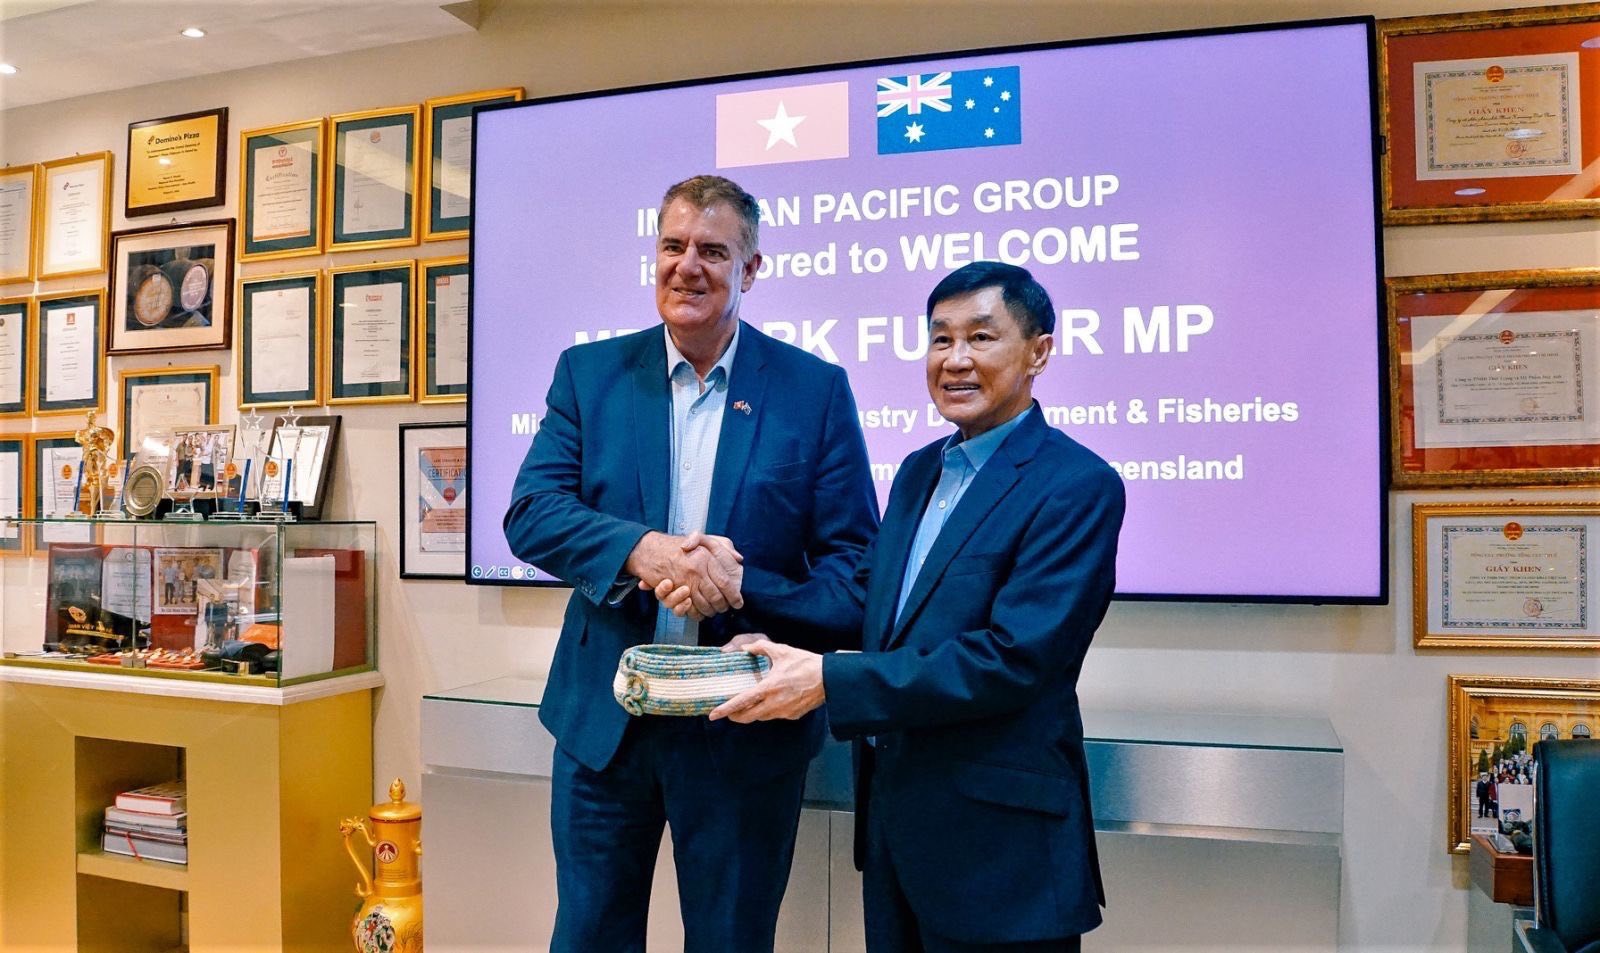 Ngài Mark Furner - Bộ Trưởng Phát triển Nông Nghiệp - Thủy Sản kiêm Bộ trưởng Cộng đồng Nông thôn Bang Queensland, Úc thăm tập đoàn IPPG. Ảnh: PV.